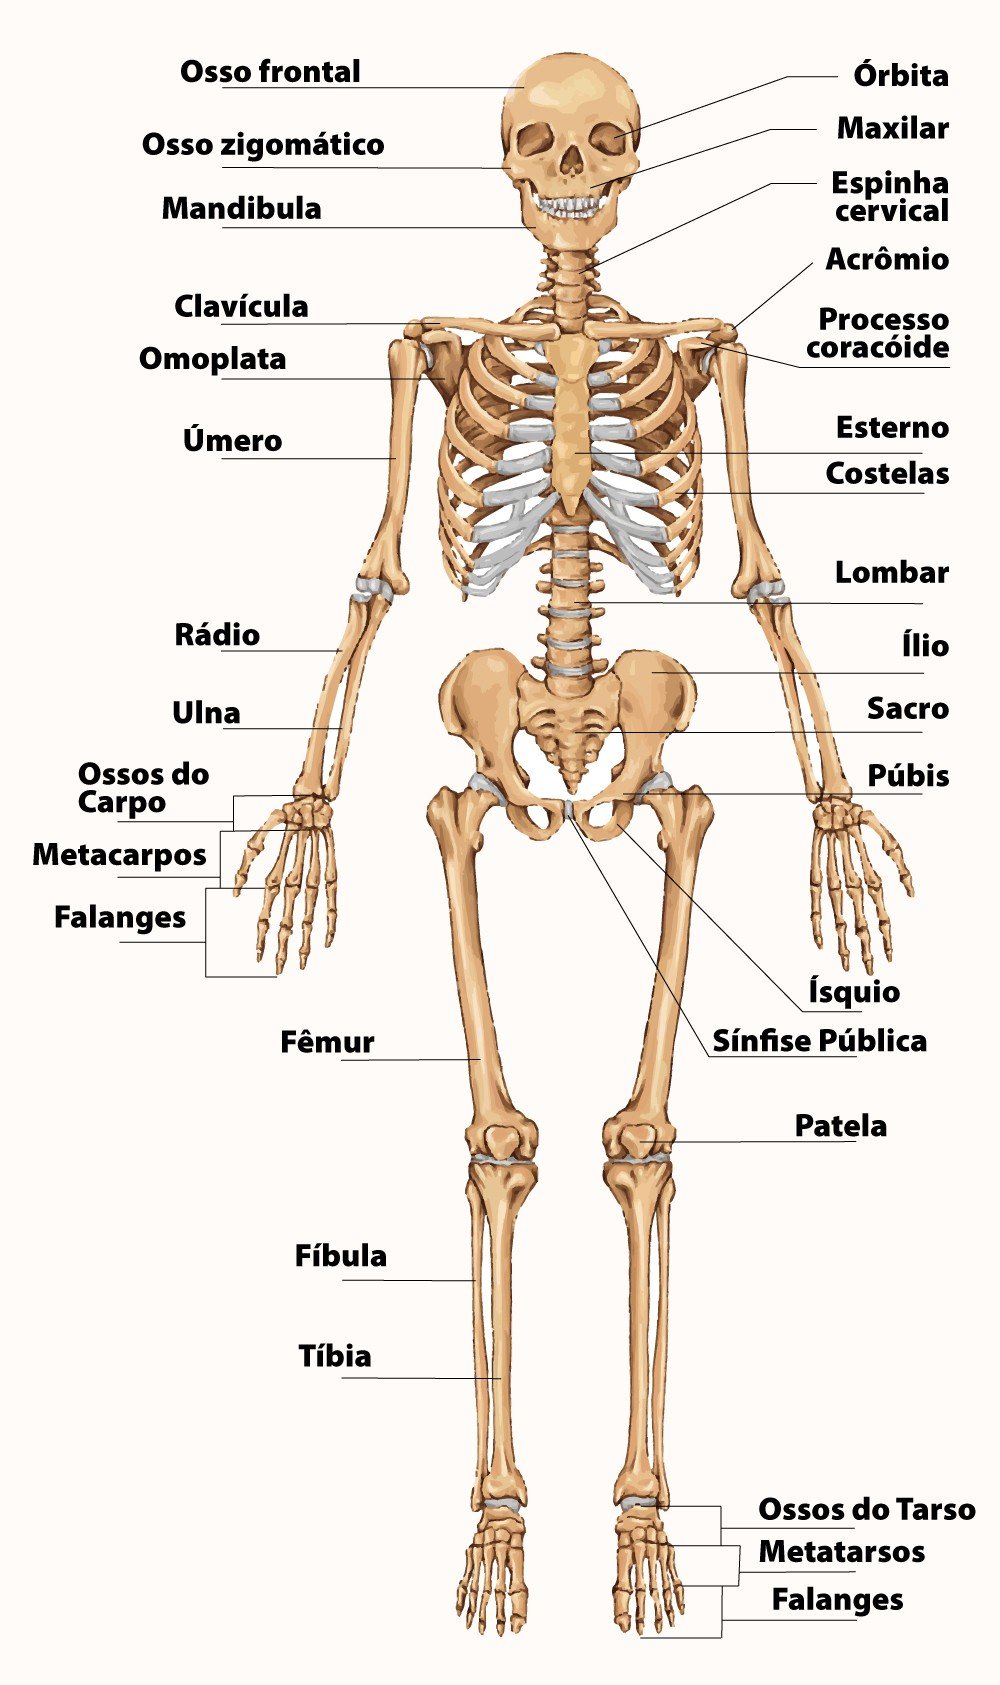 Esqueleto humano com o nome dos ossos visto de frente.